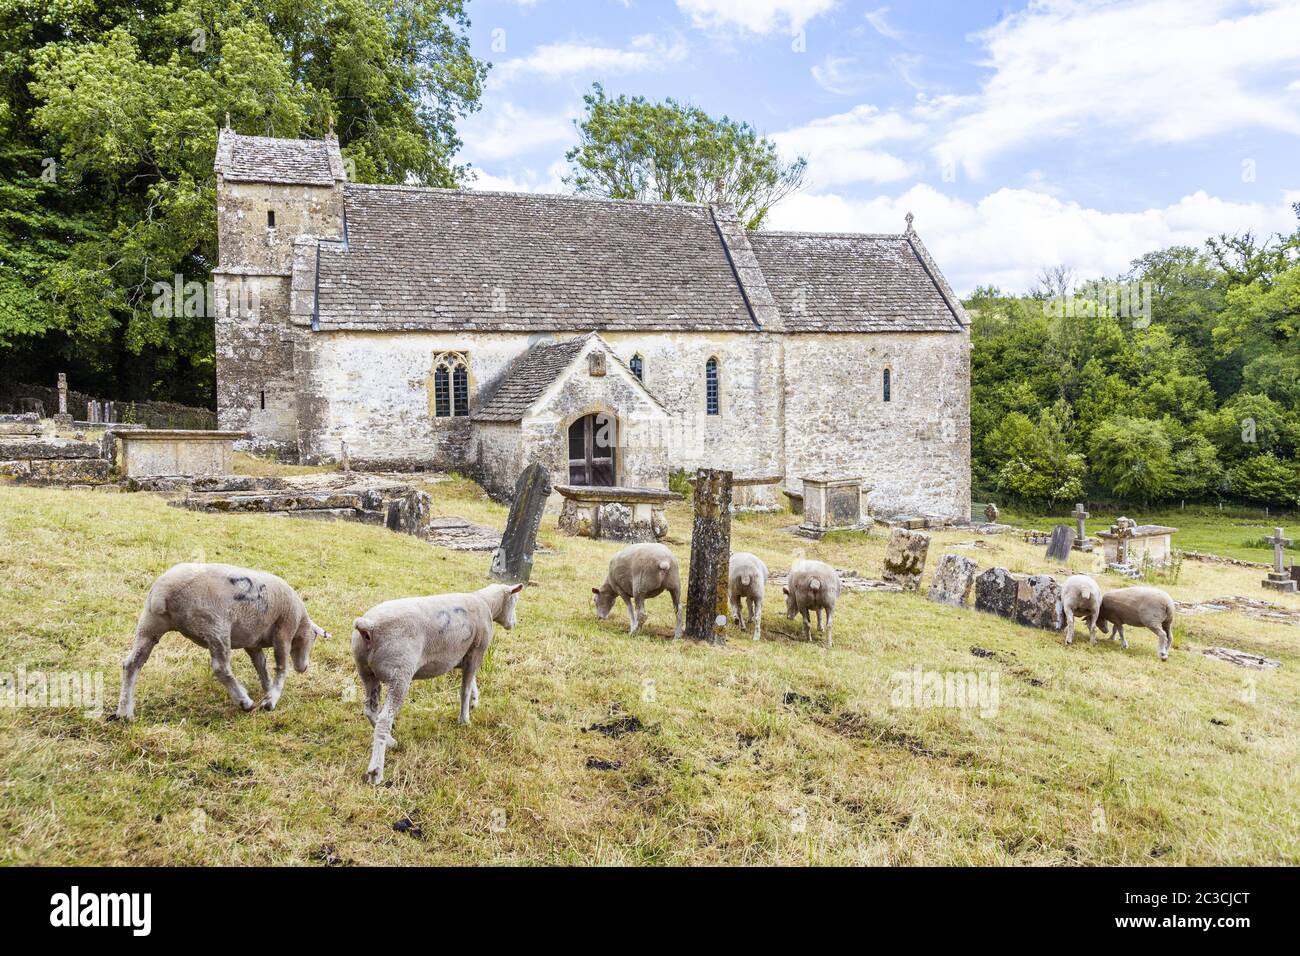 Moutons paître dans le cimetière de l'église saxonne de St Michael dans le village de Duntisbourne Rouse, Gloucestershire, Royaume-Uni Banque D'Images